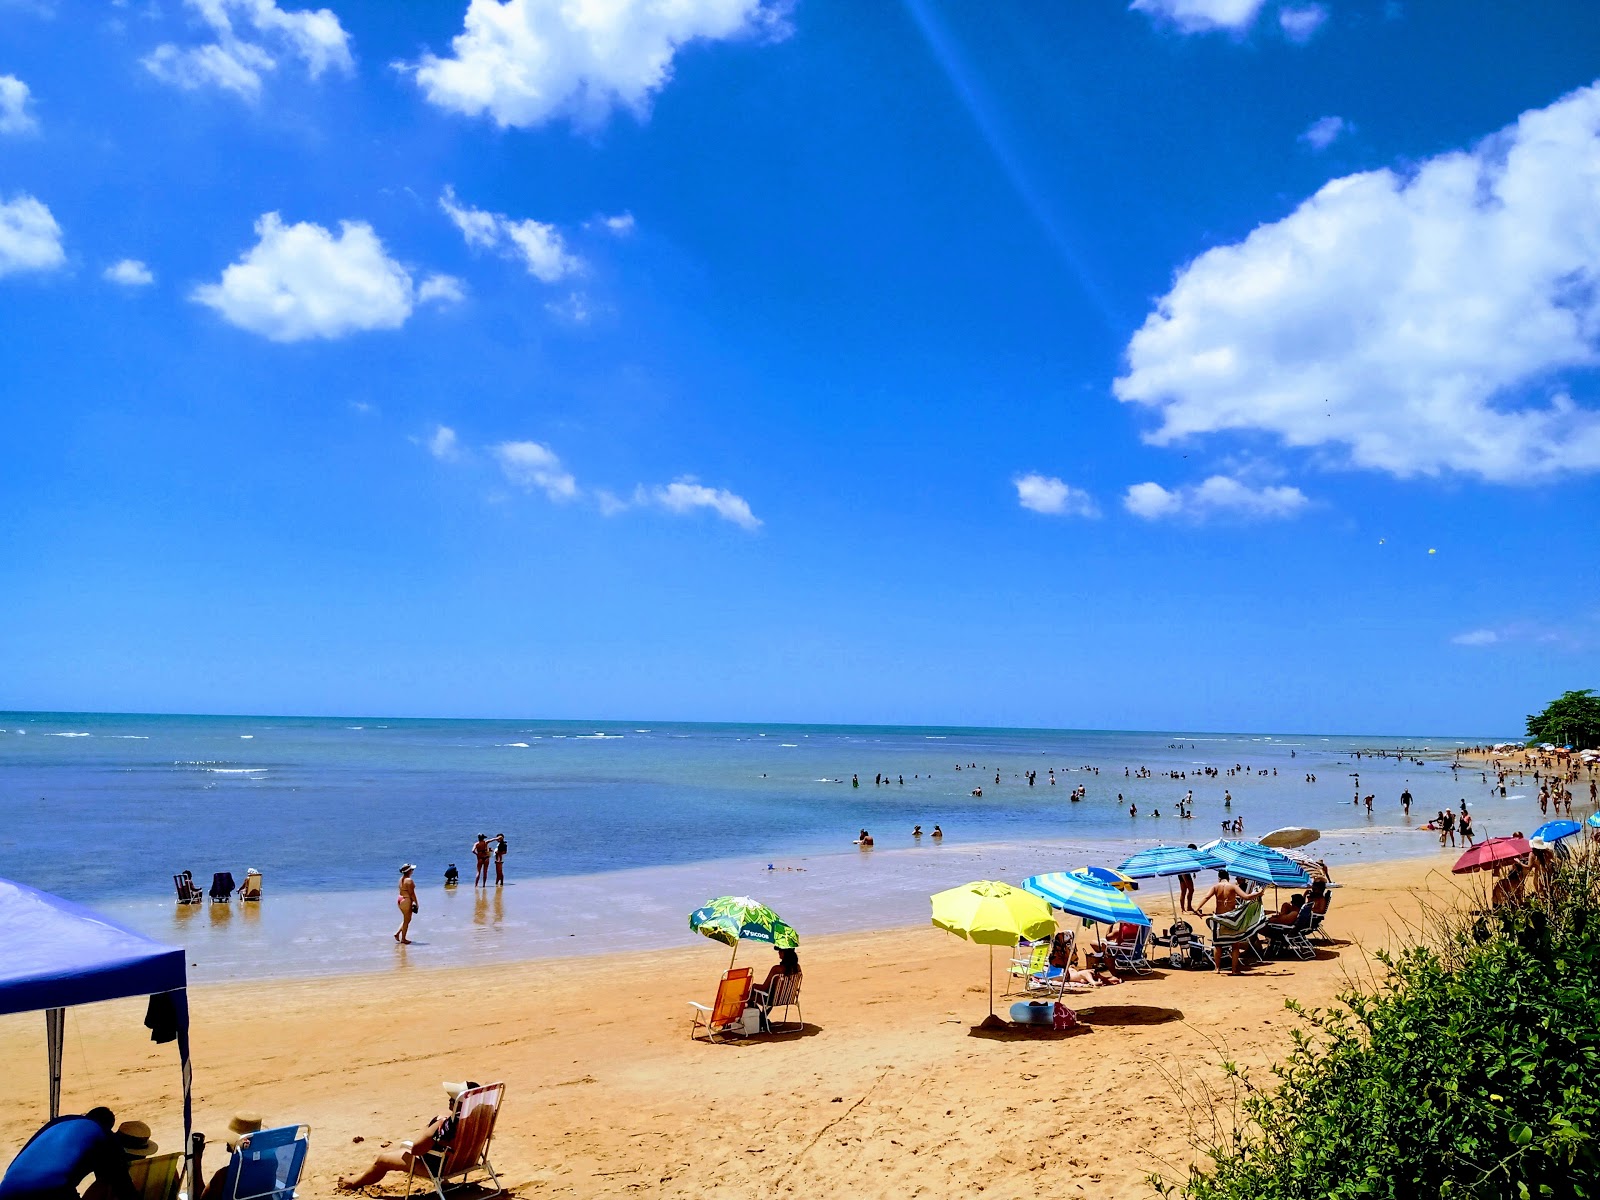 Mar Azul Plajı'in fotoğrafı parlak kum yüzey ile